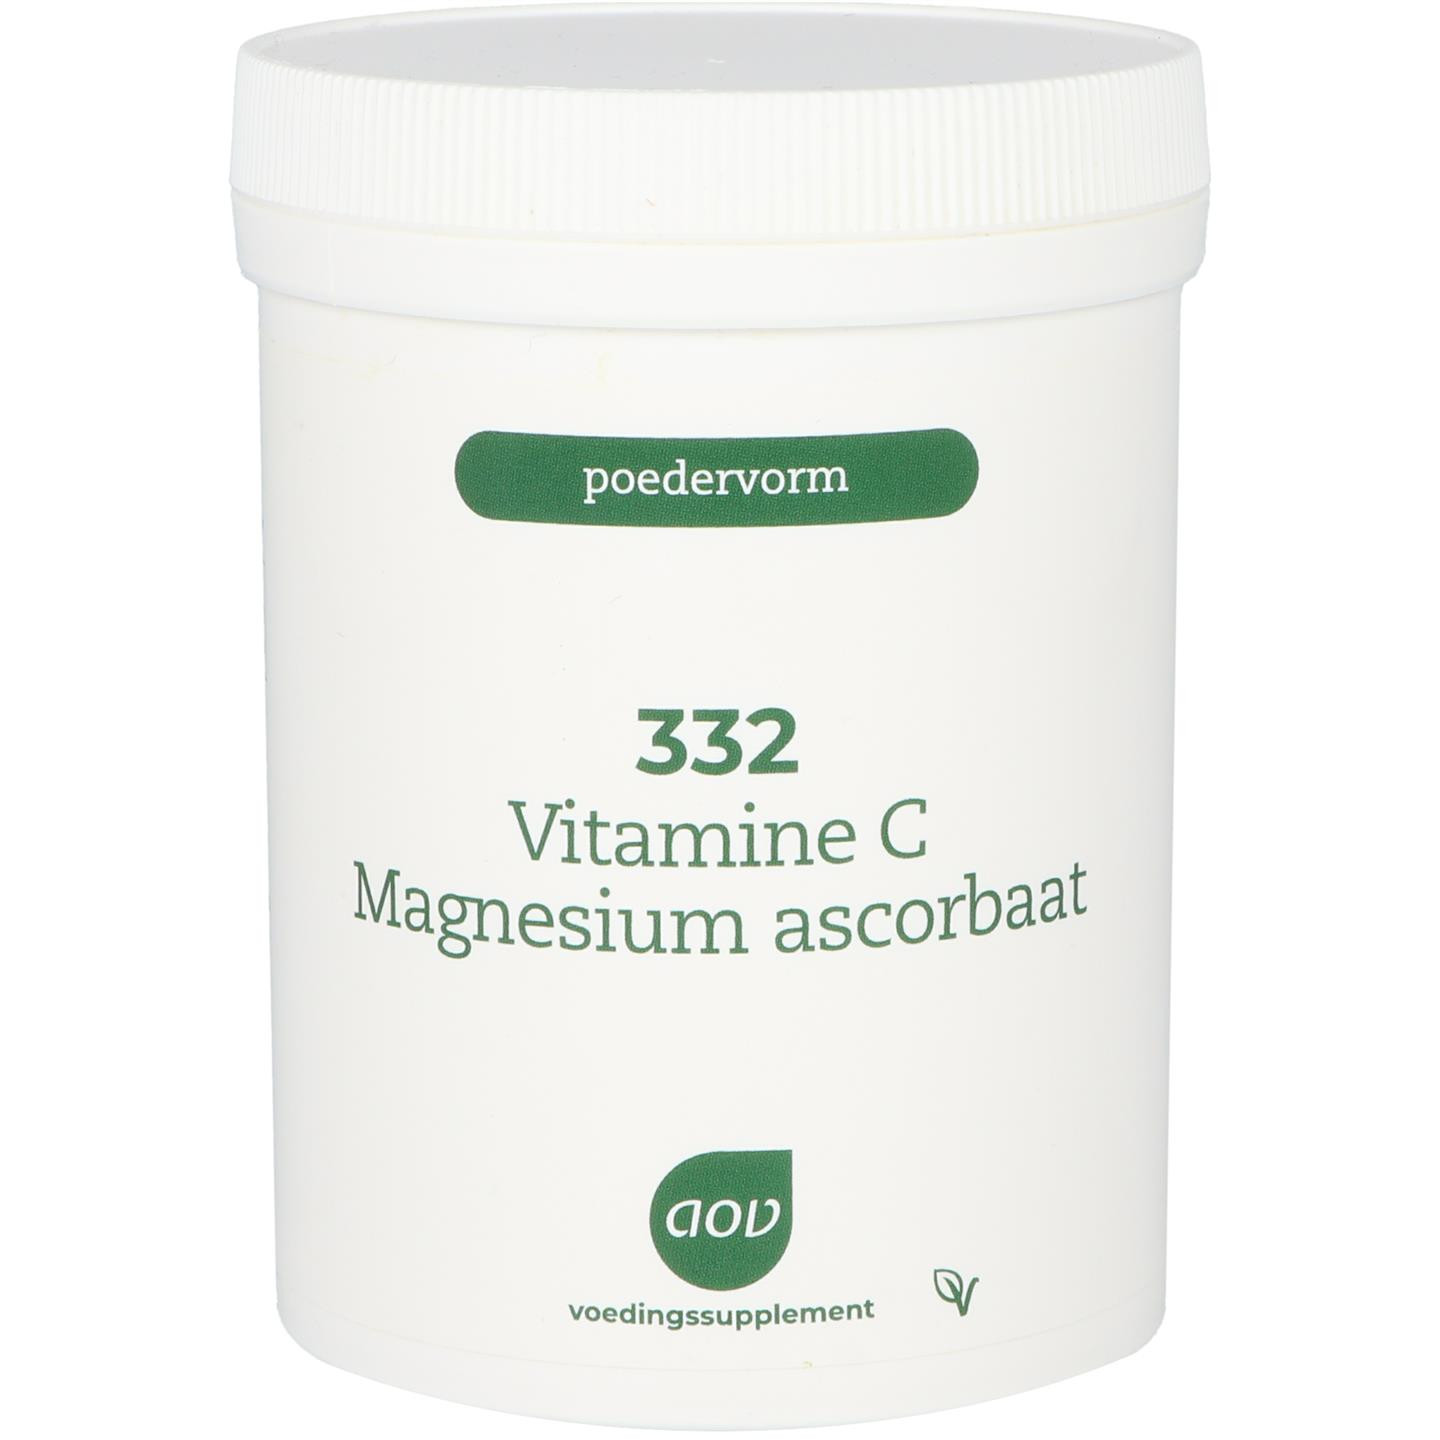 332 Vitamine C Magnesium ascorbaat